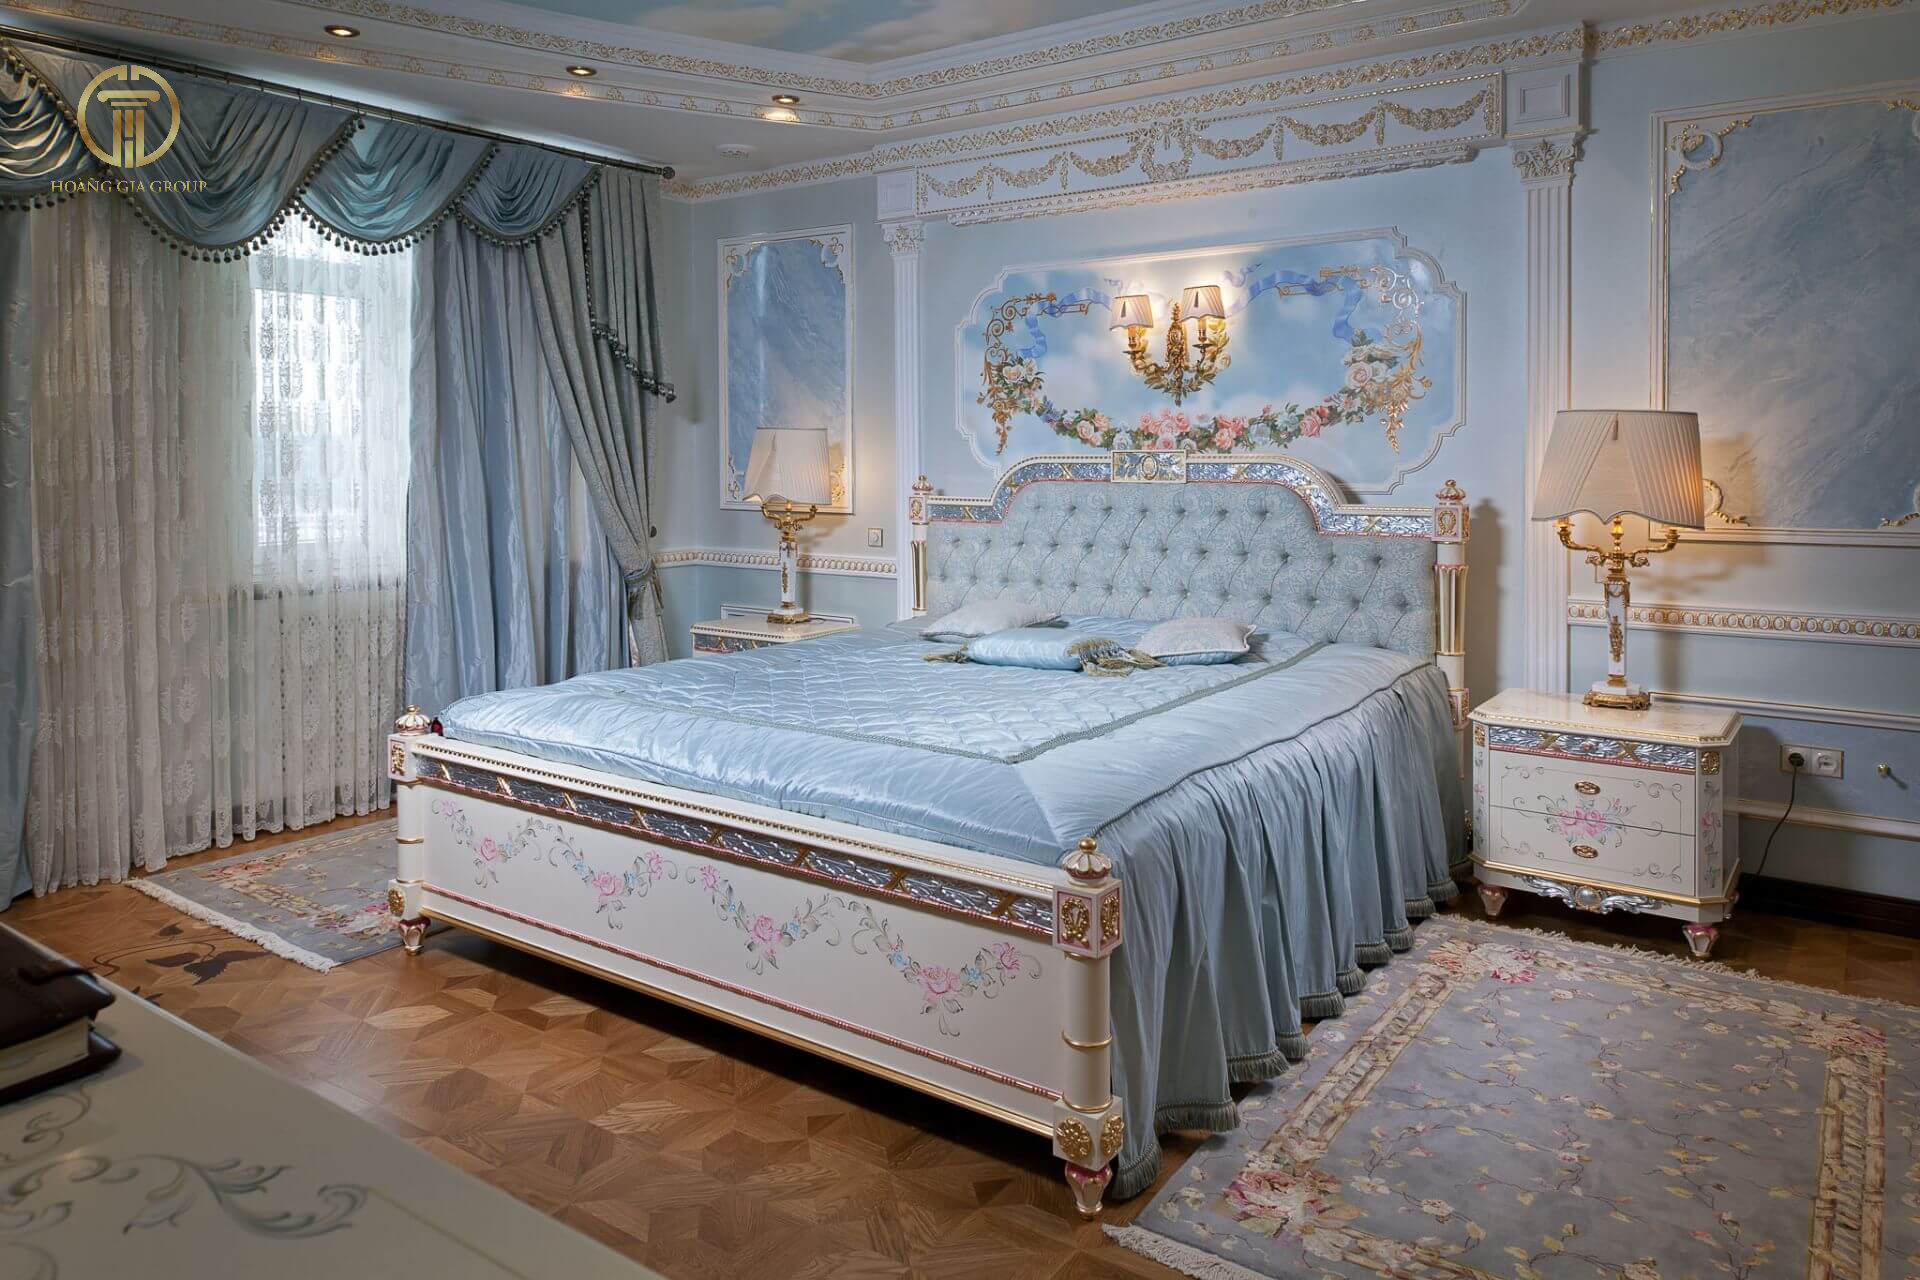 Phòng ngủ tân cổ điển với màu xanh bắt mắt cùng hoạ tiết trang trí tinh xảo